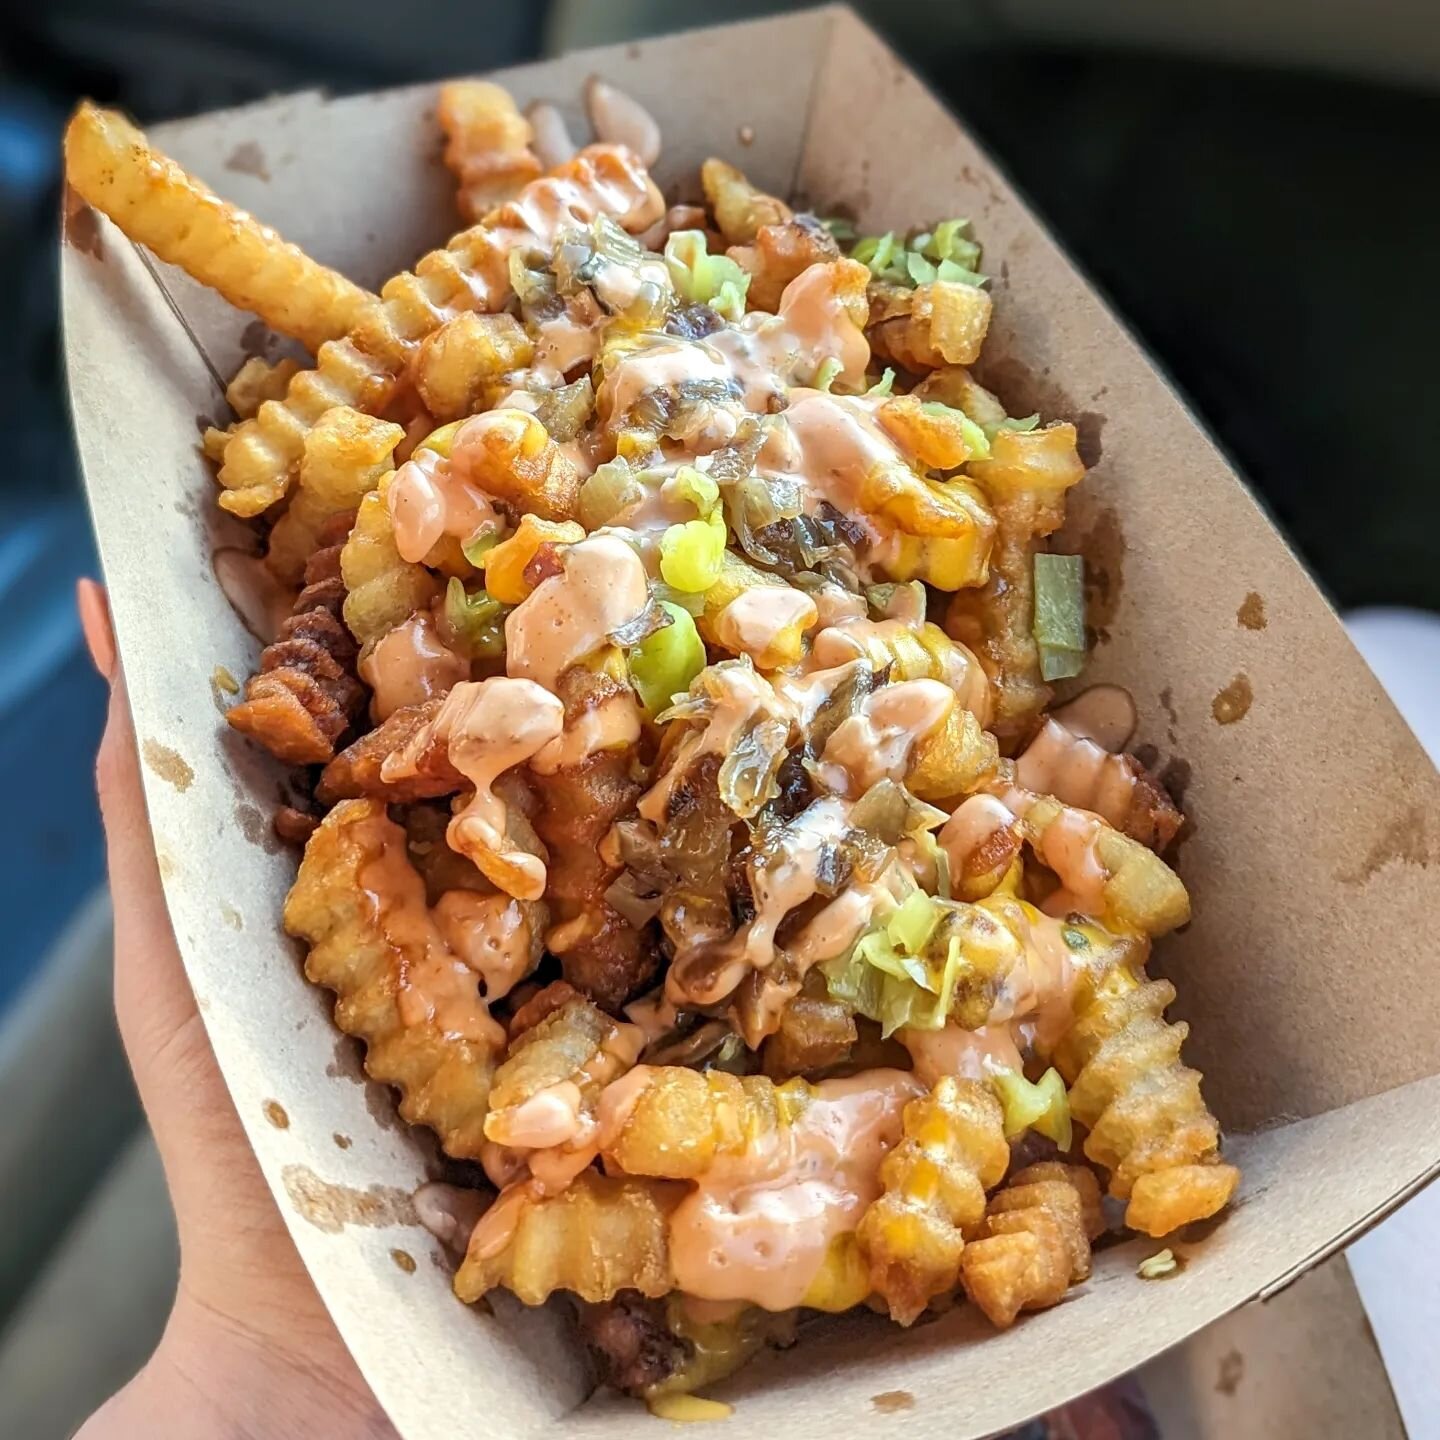 Animal fries, chicken tinga tacos, and choripan hot dog @bleuducktruck 😋